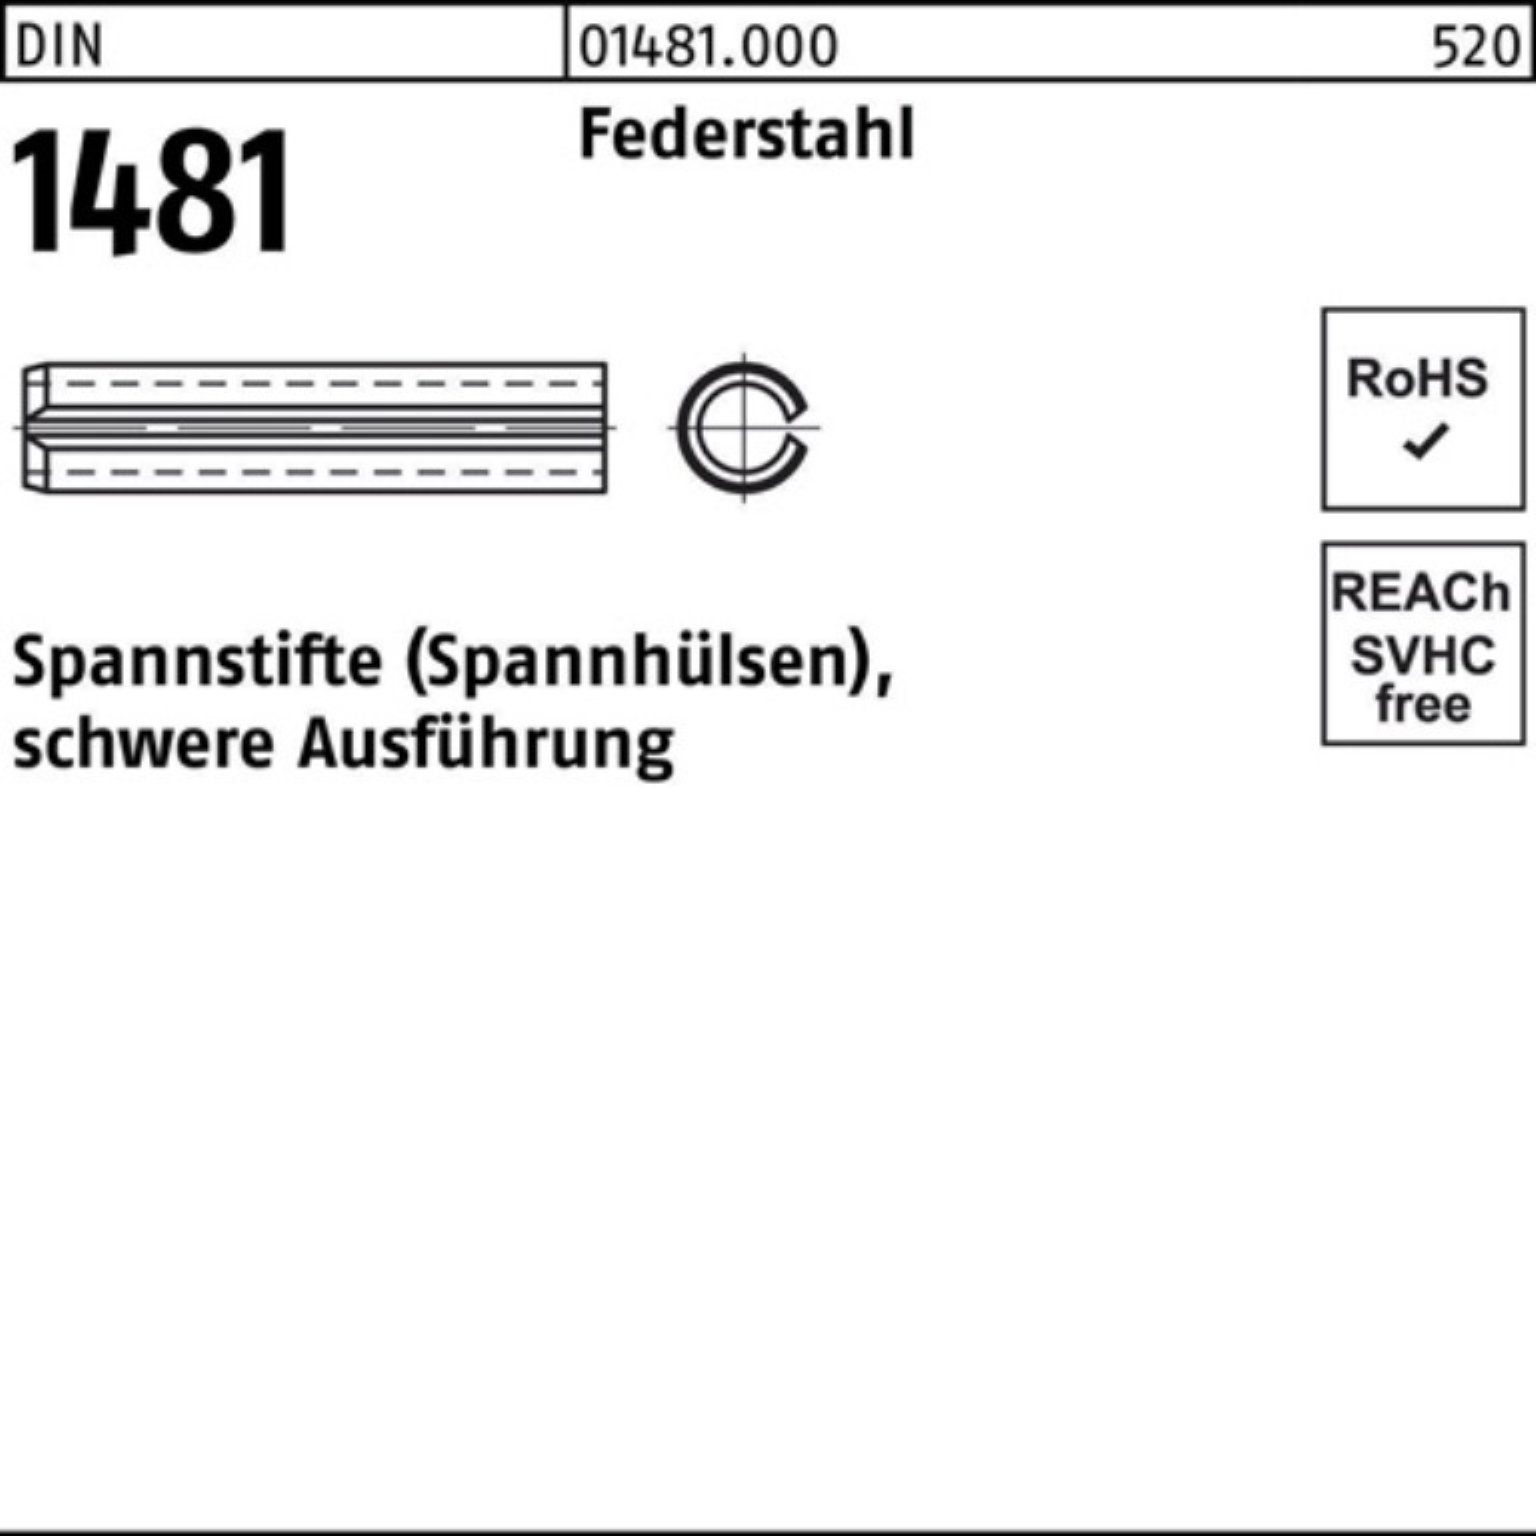 Reyher Spannstift 200er Pack Spannstift DIN 1481 2x 14 Federstahl schwere Ausführung 20